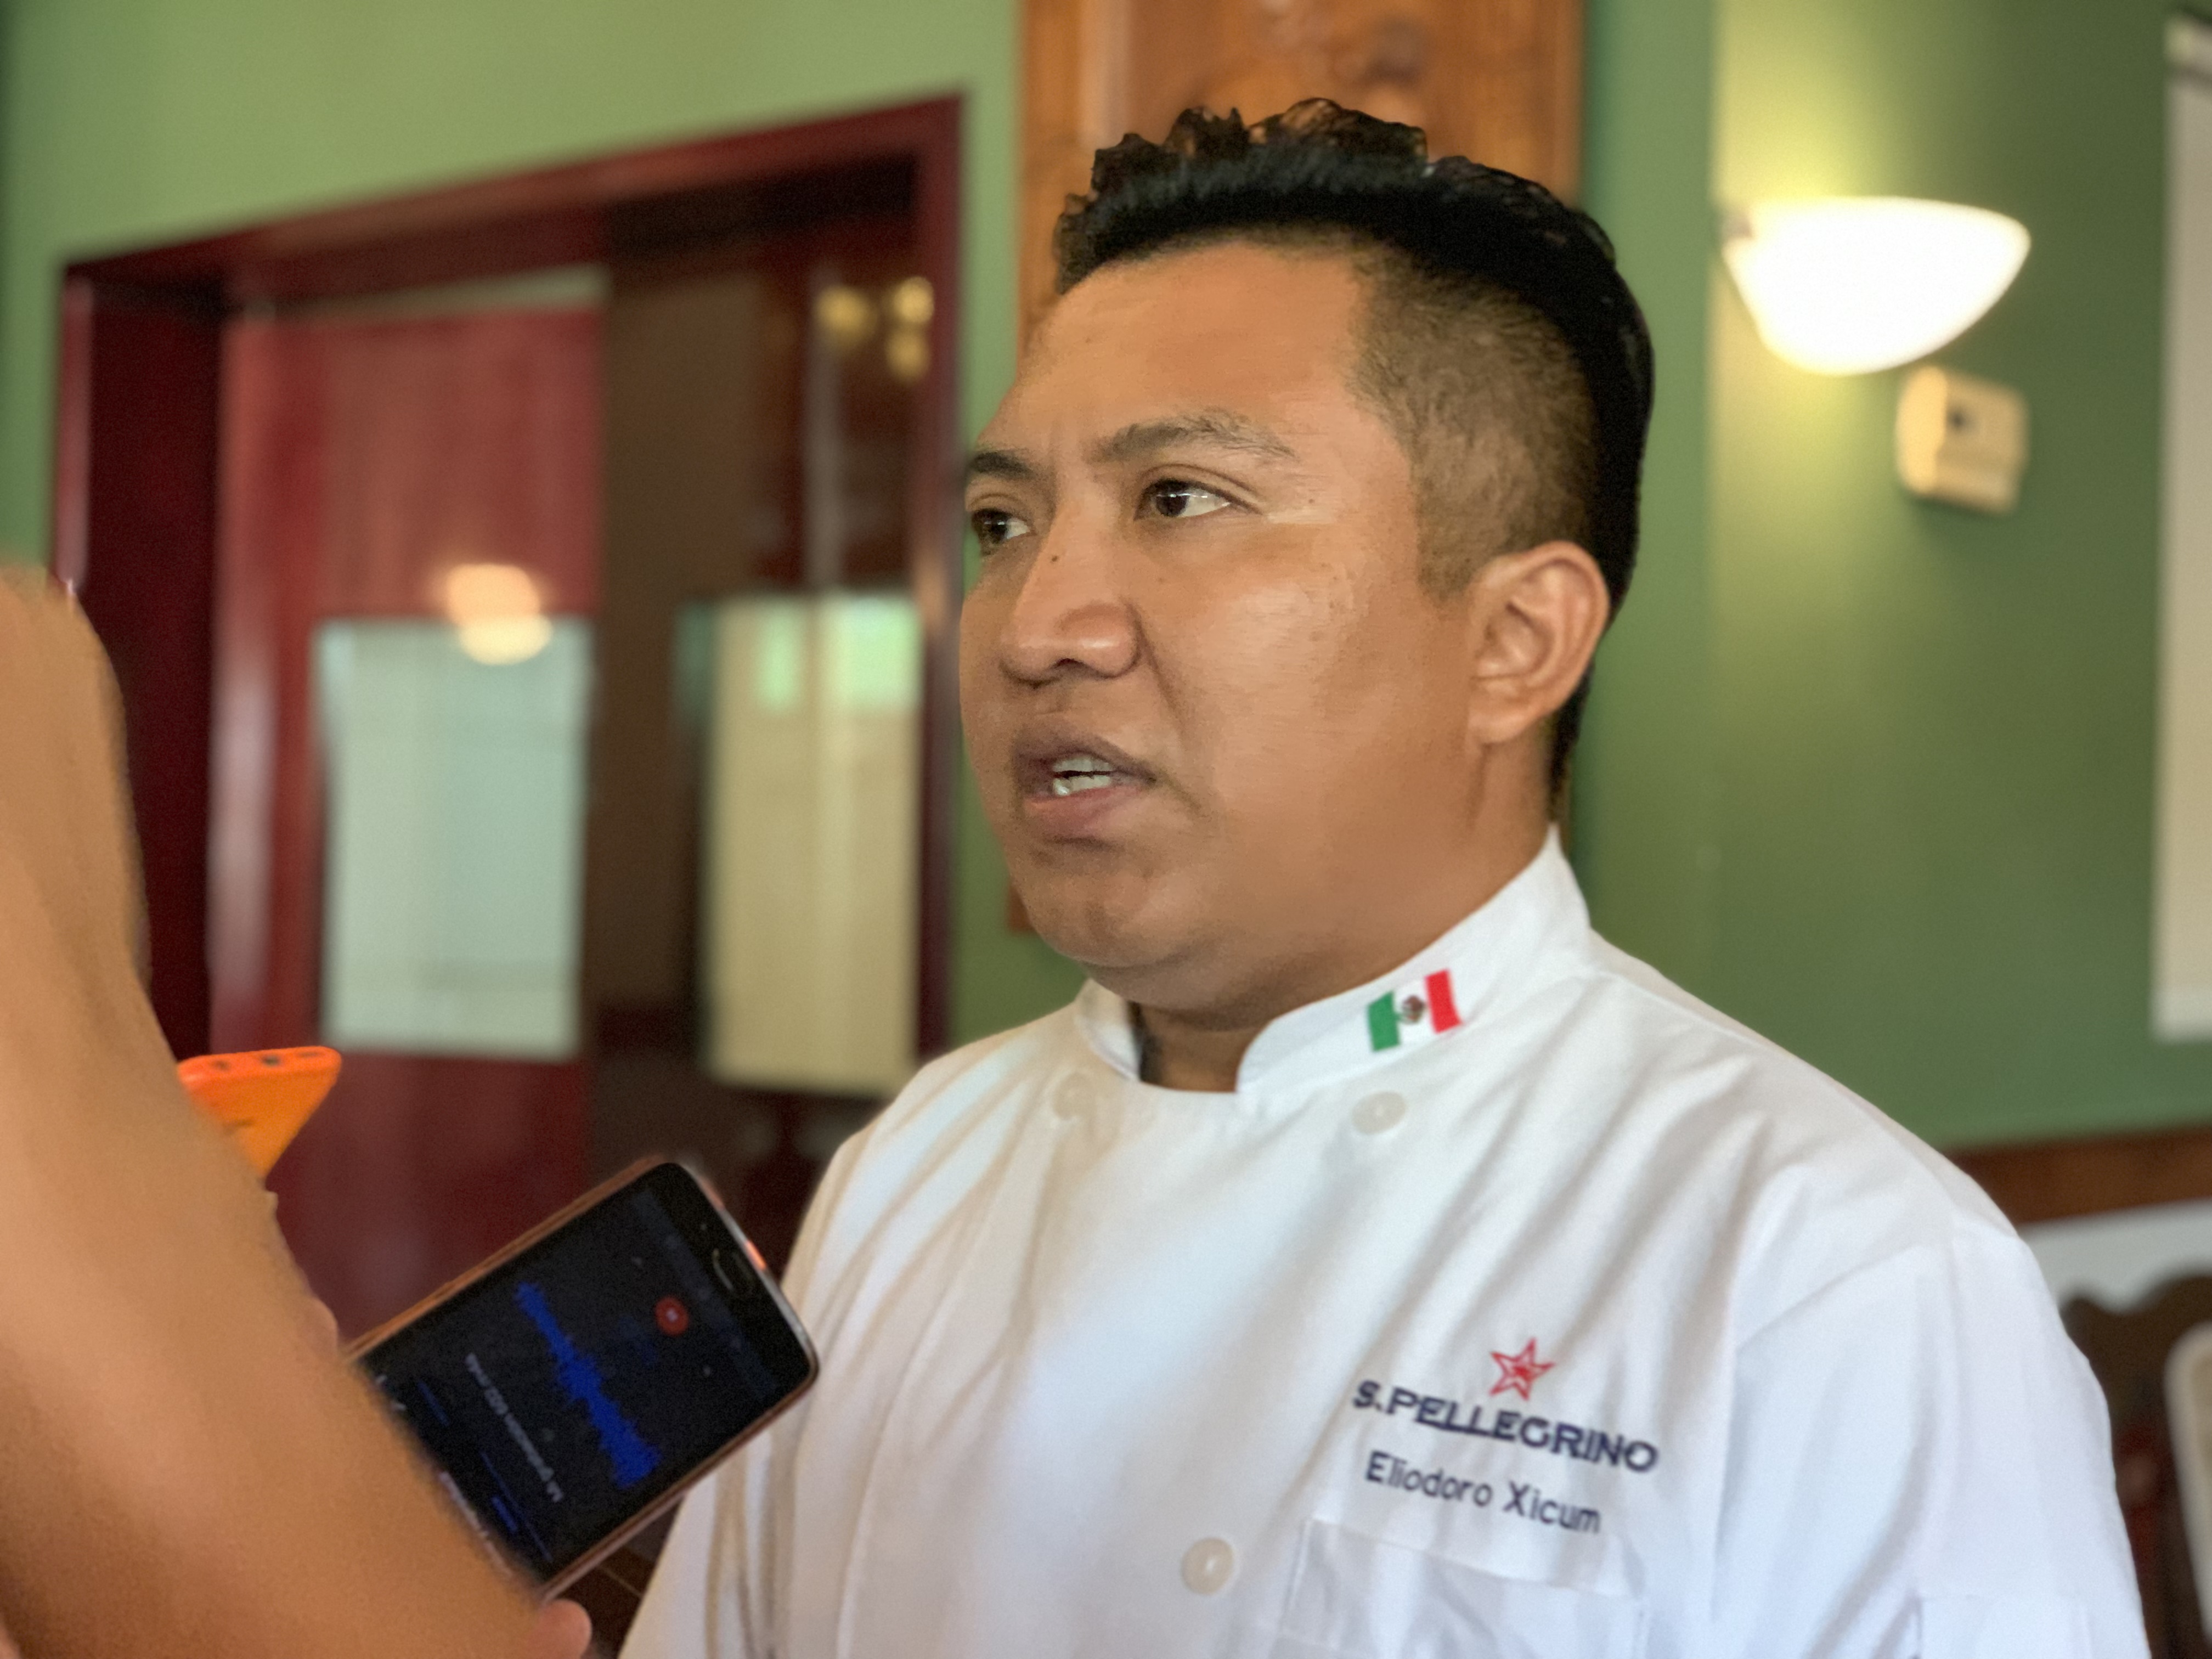 Photo of Joven de Chumayel participa con un tamal de mollejas en el concurso culinario S.Pellegrino Young Chef 2019-2020